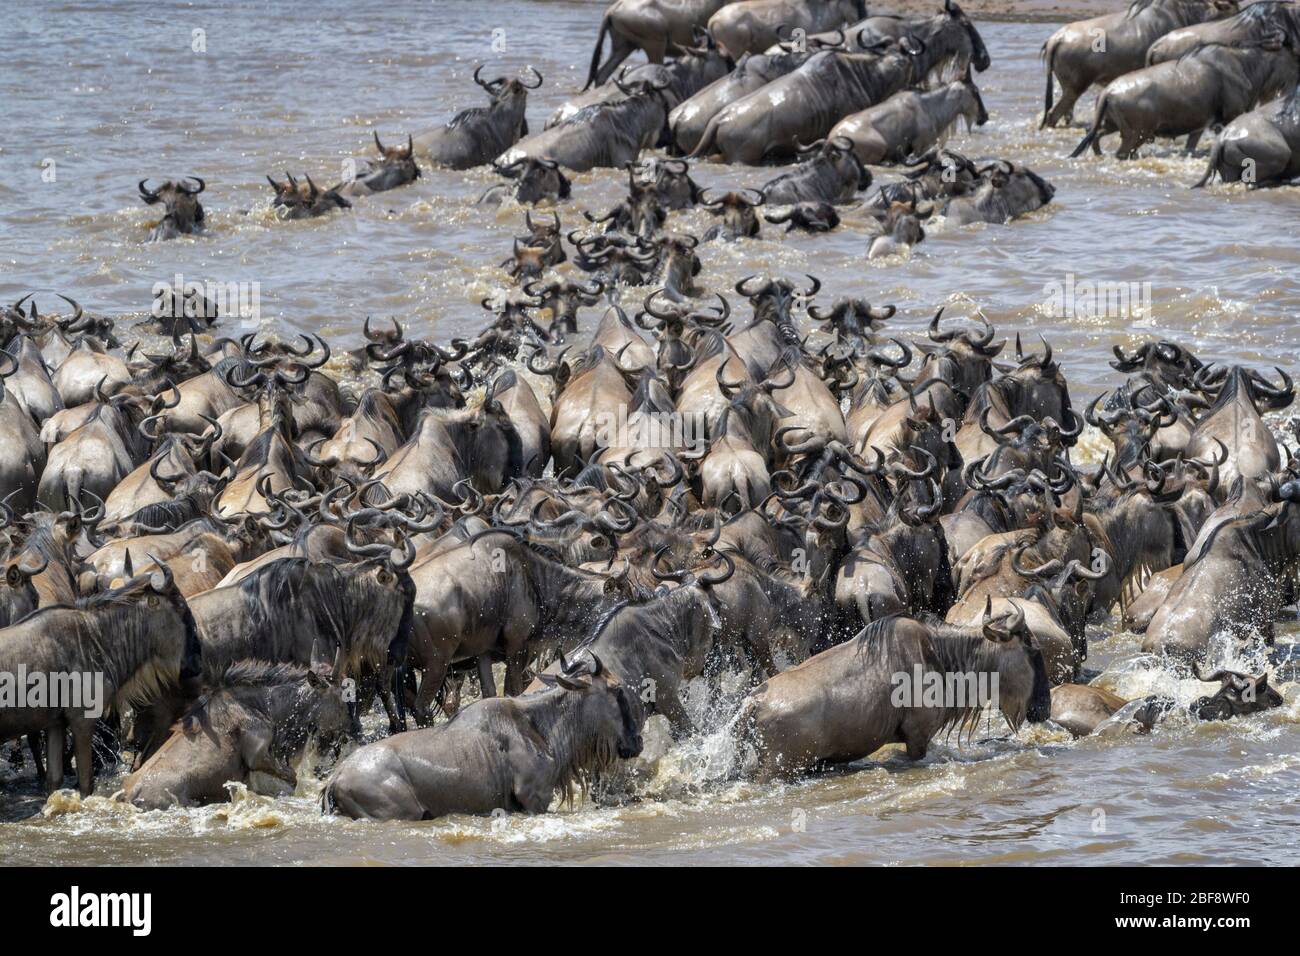 Bleu wildebeest, hardinde gnu (Connochaetes taurinus) troupeau traversant la rivière Mara pendant la grande migration, Parc national Serengeti, Tanzanie. Banque D'Images